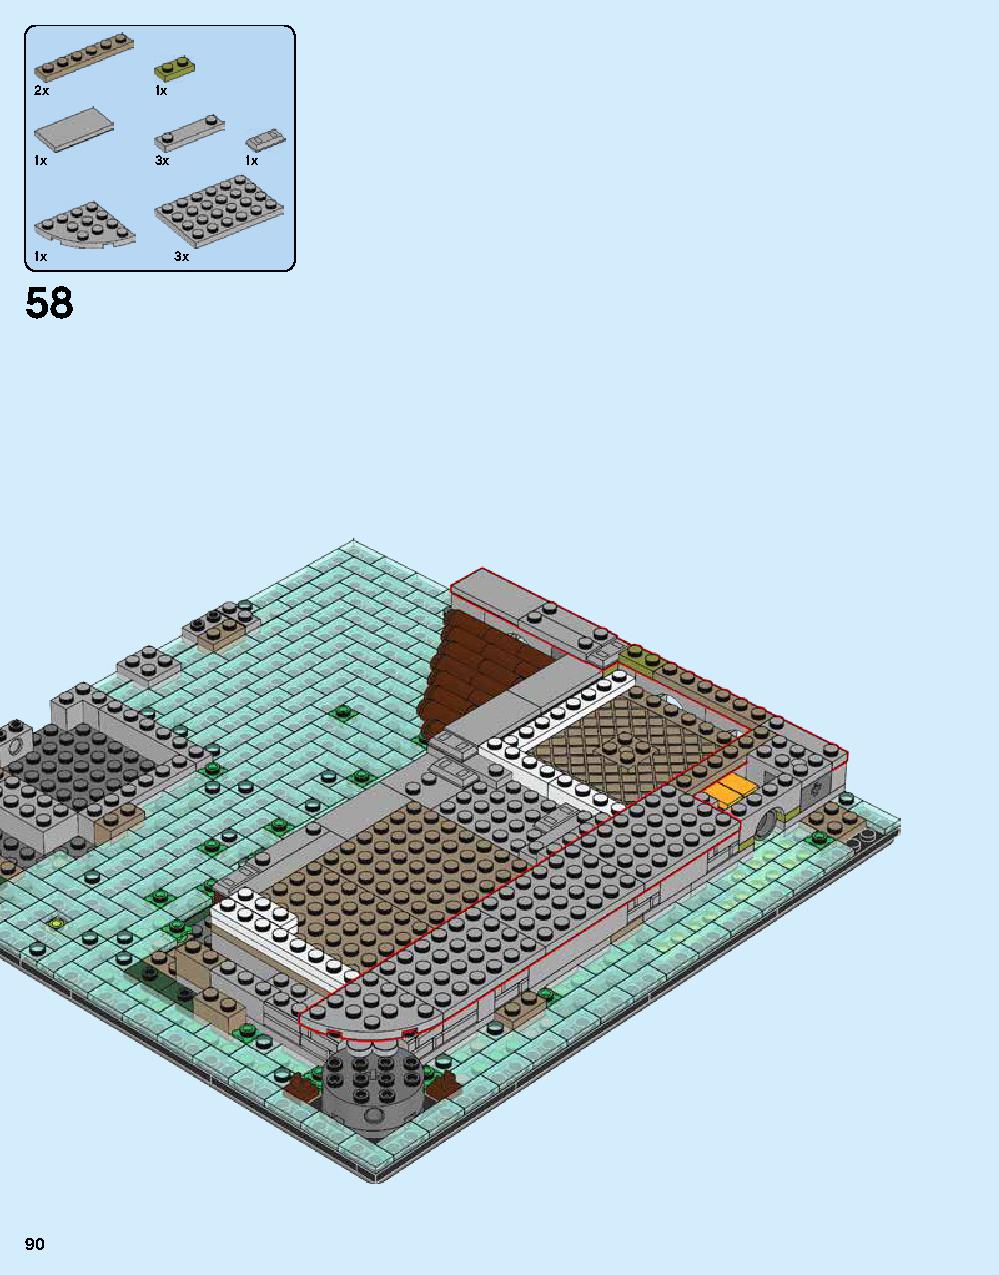 ニンジャゴー シティ 70620 レゴの商品情報 レゴの説明書・組立方法 90 page